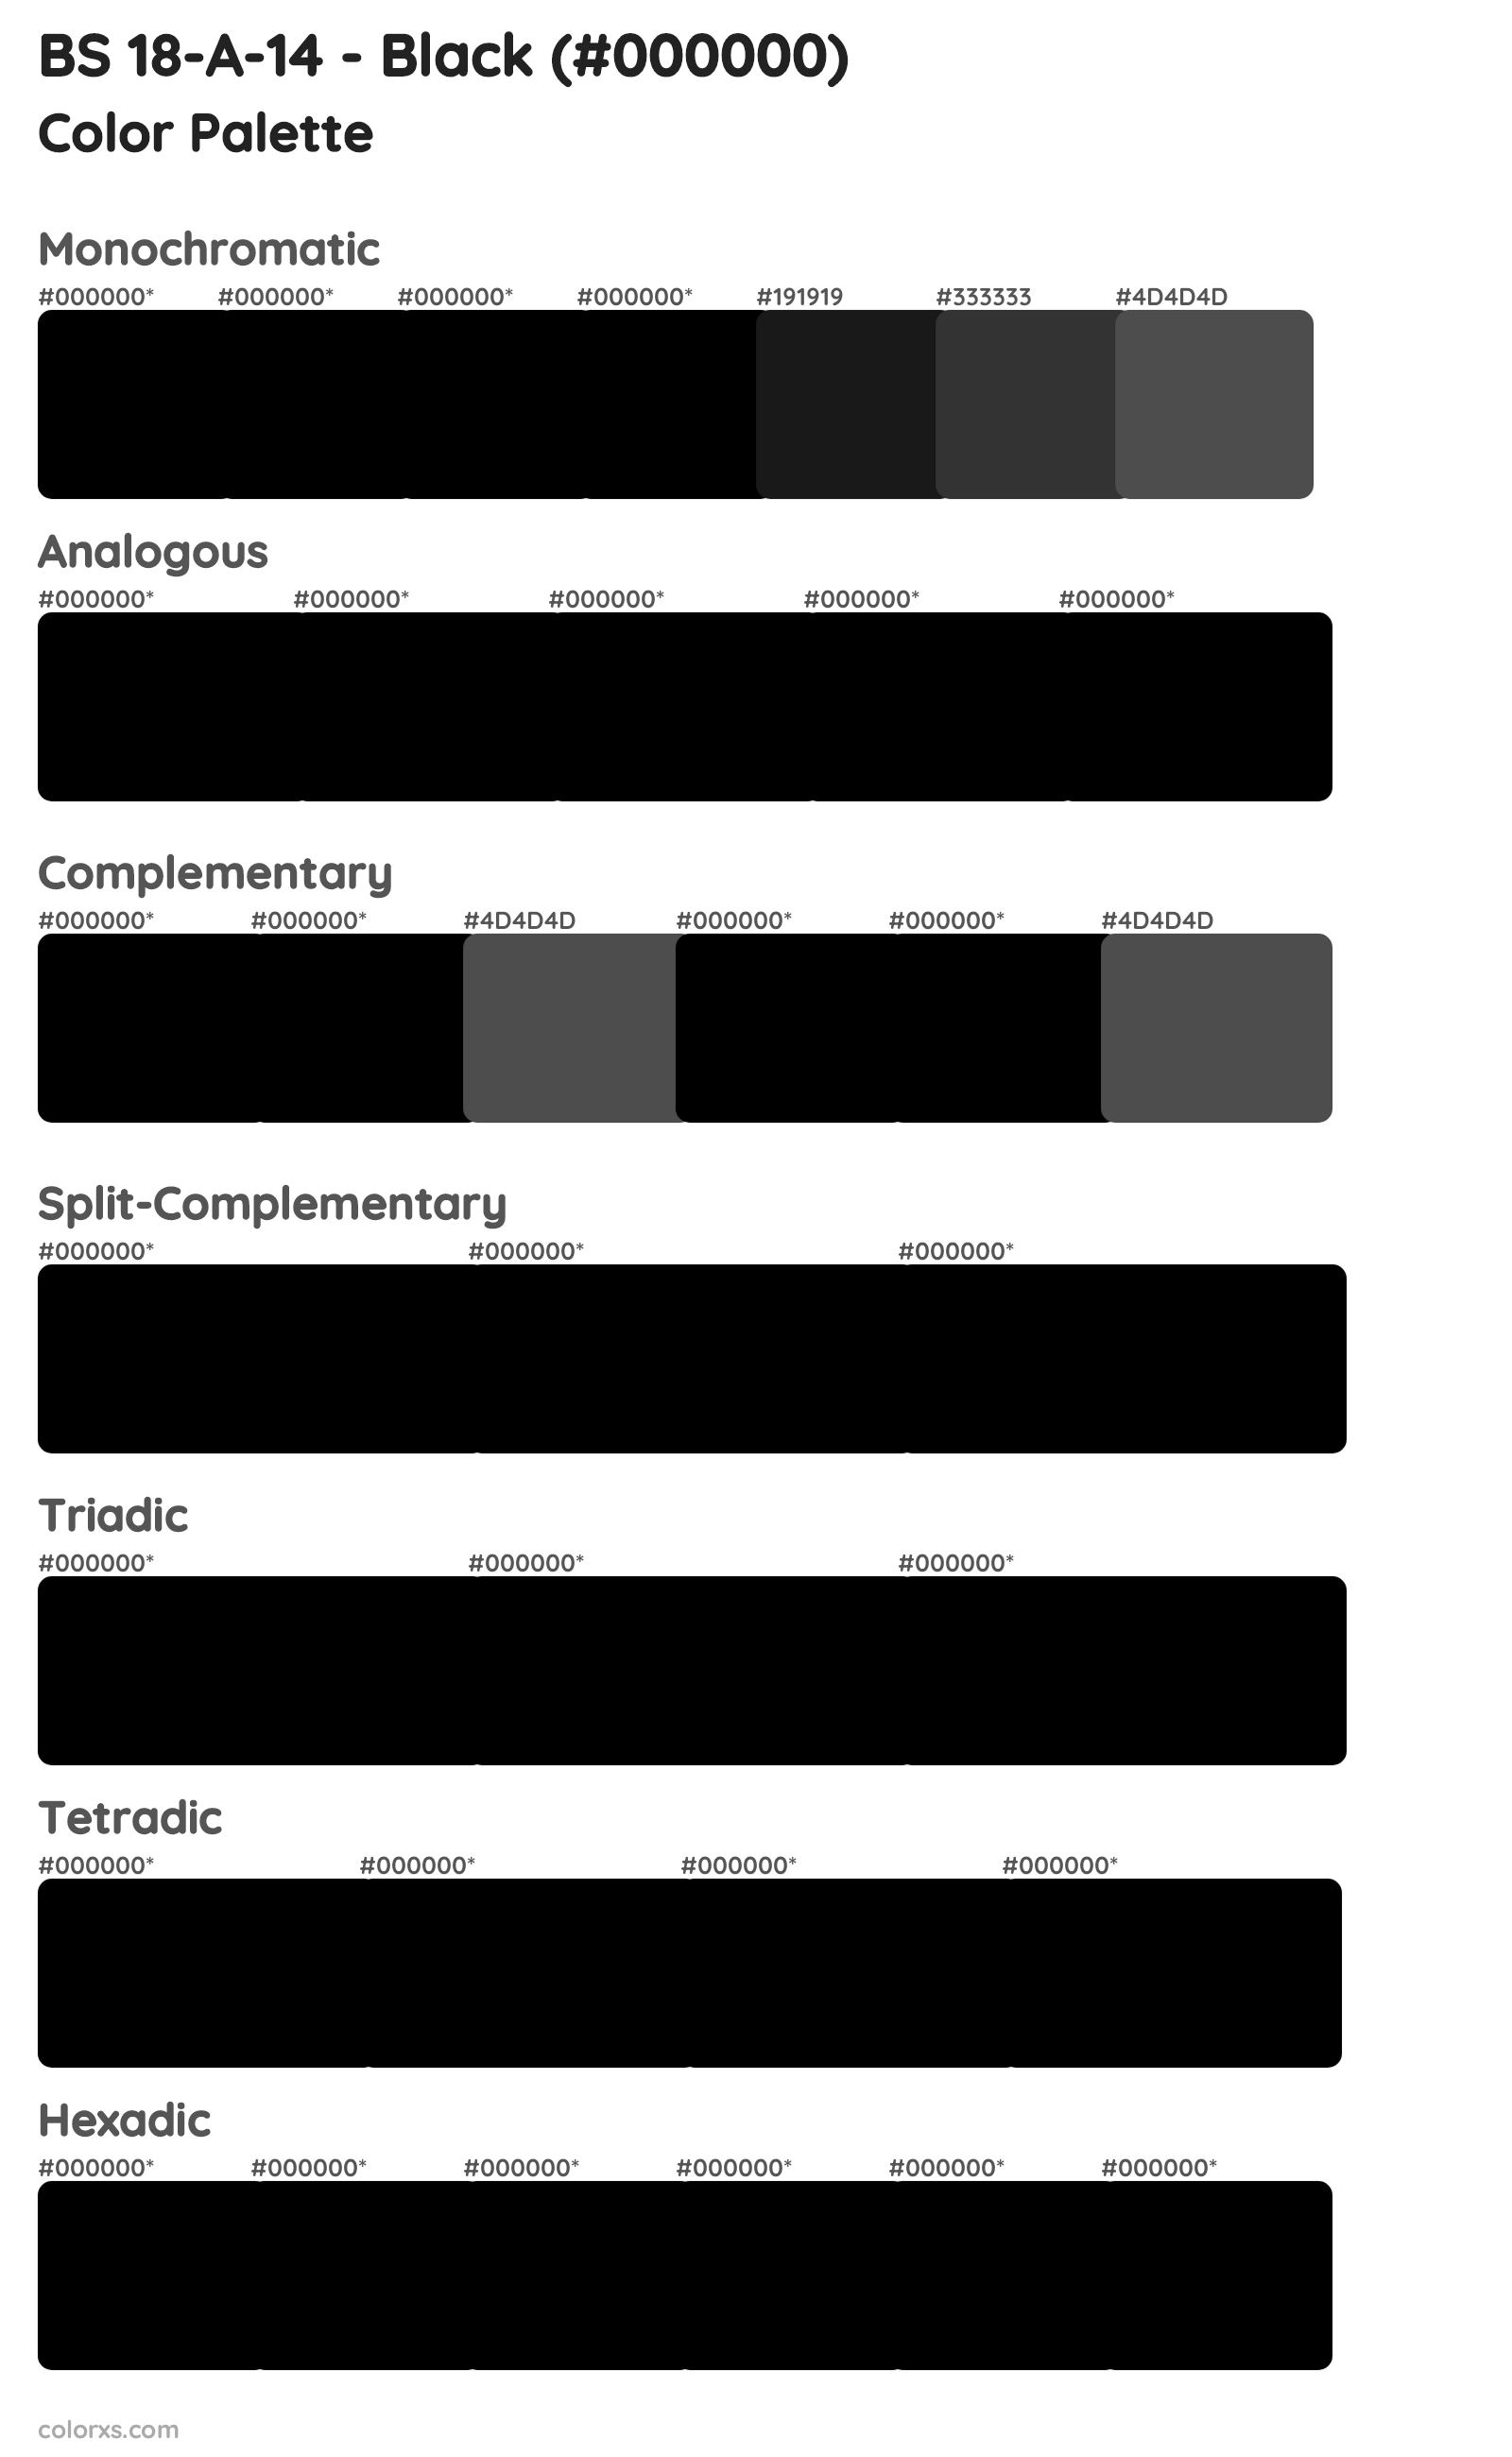 BS 18-A-14 - Black Color Scheme Palettes